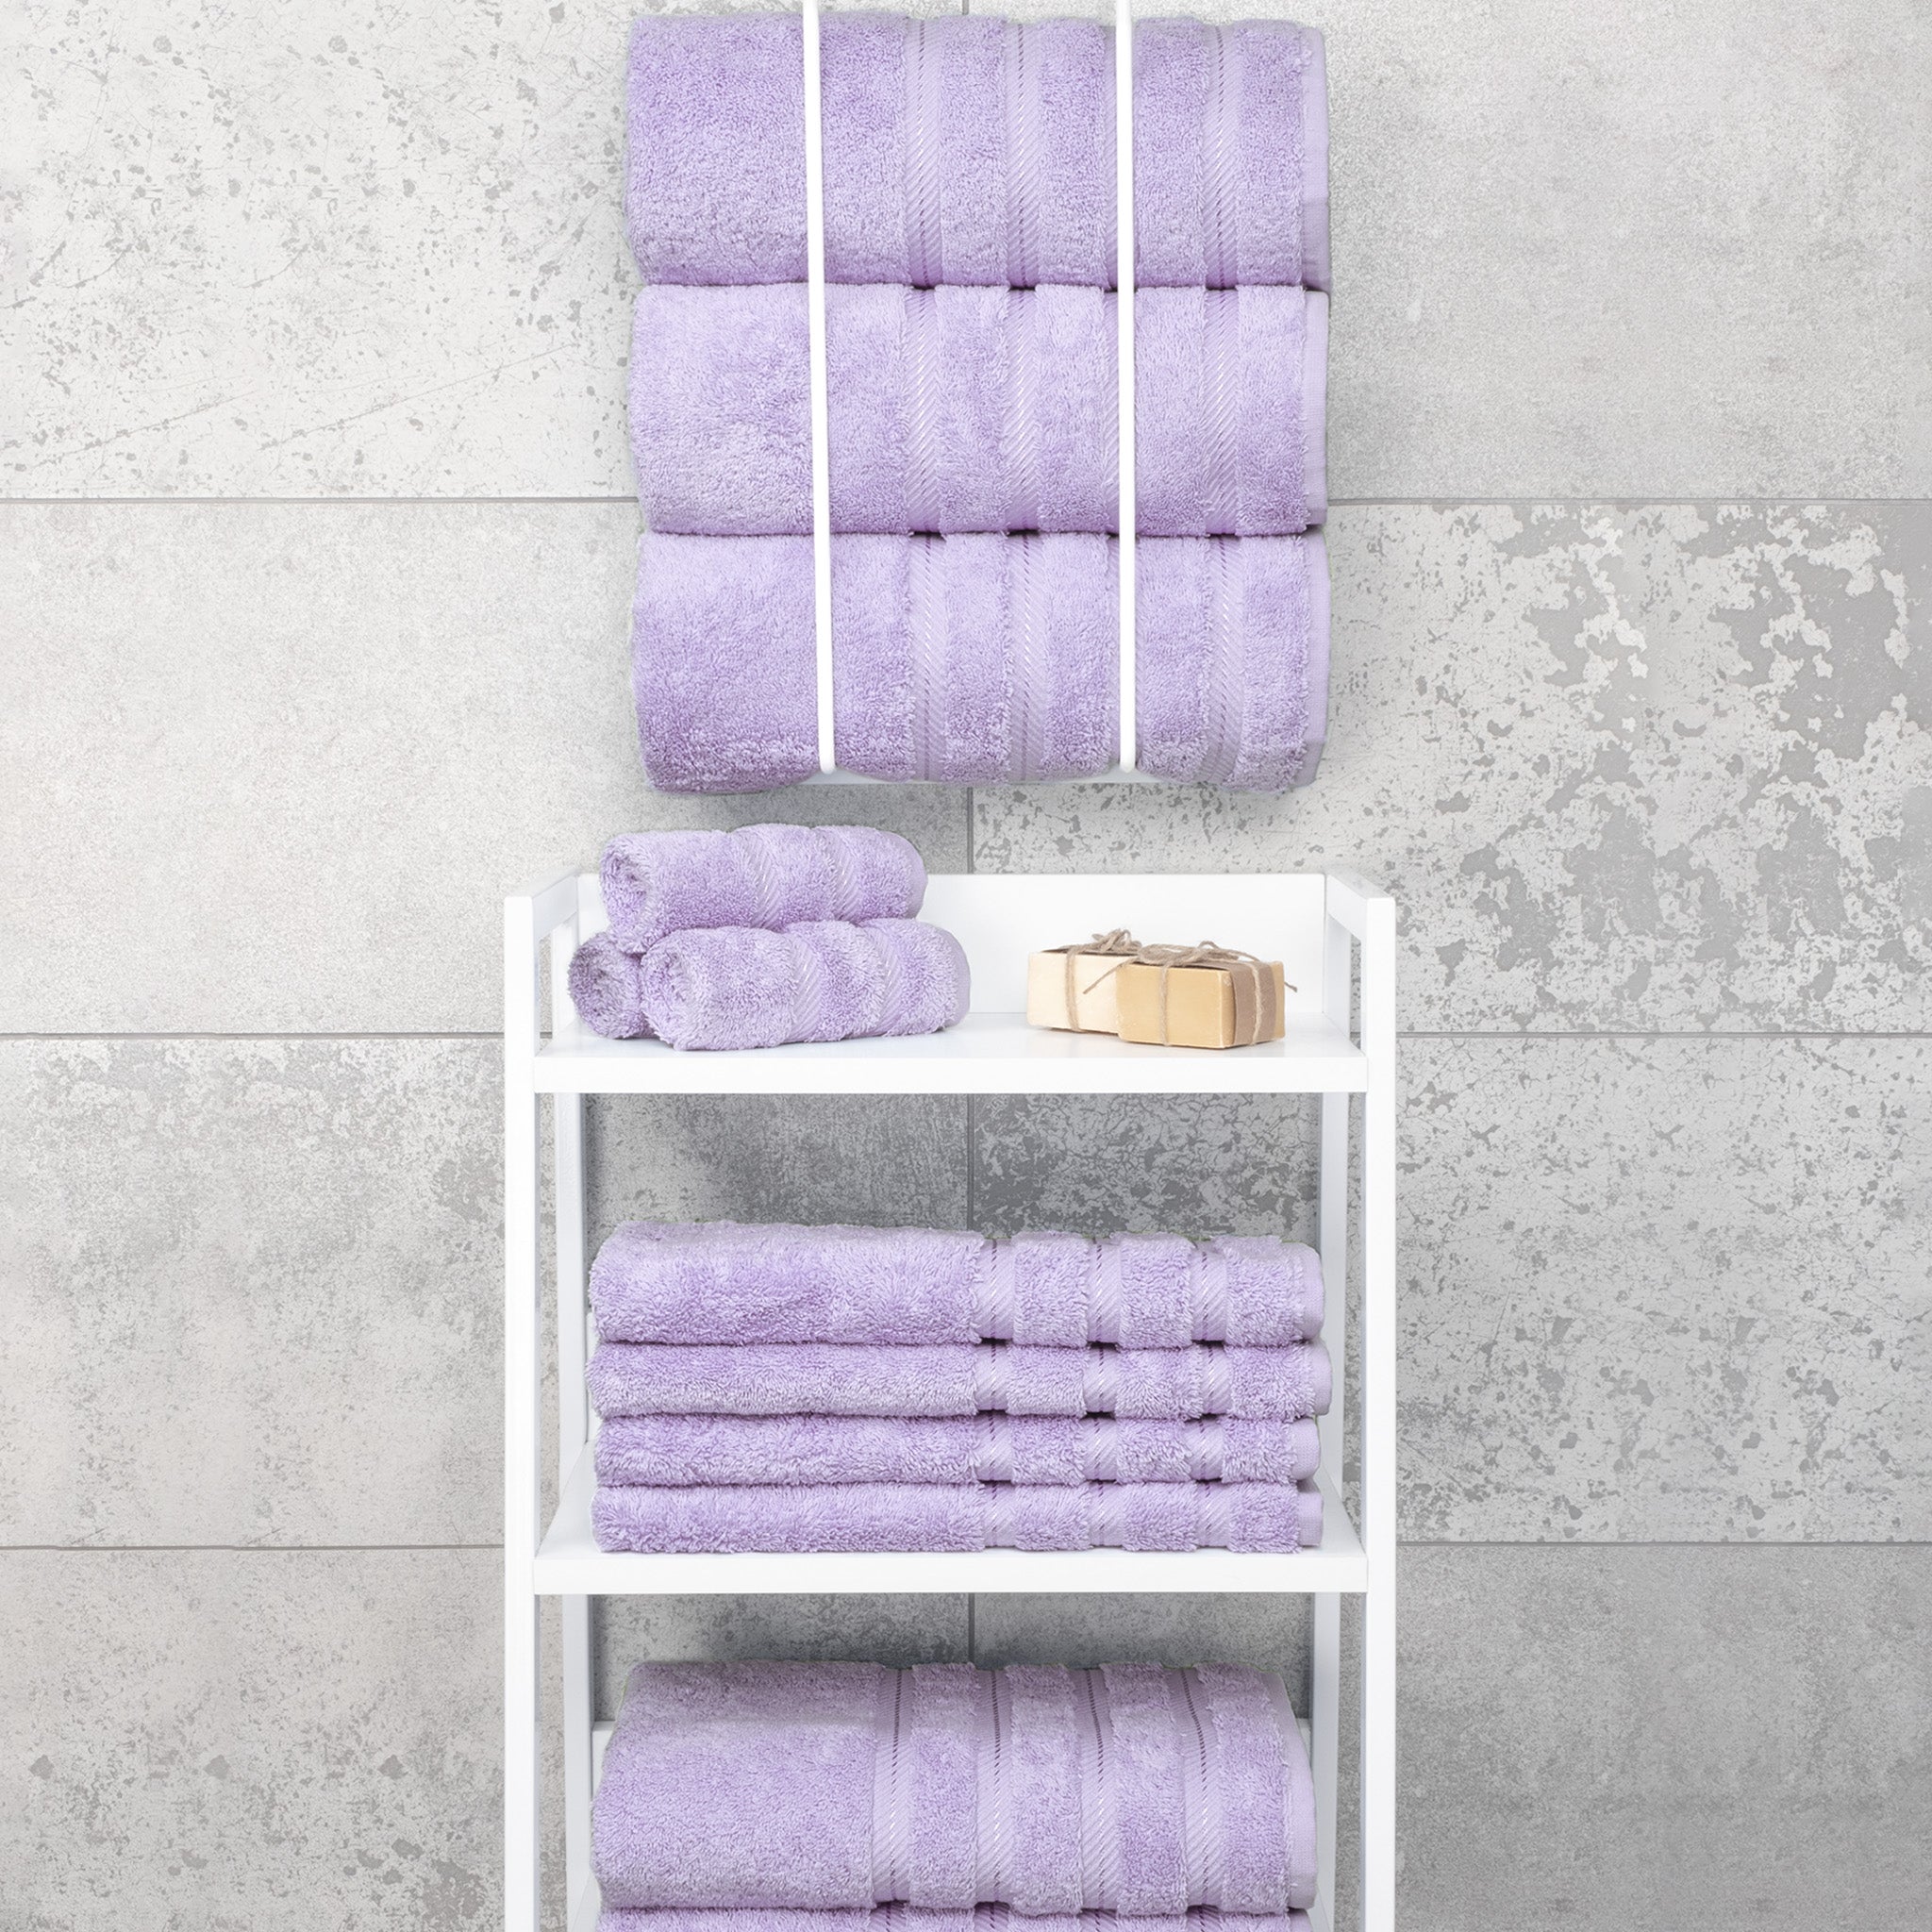 American Soft Linen 100% Turkish Cotton 4 Pack Bath Towel Set Wholesale lilac-7